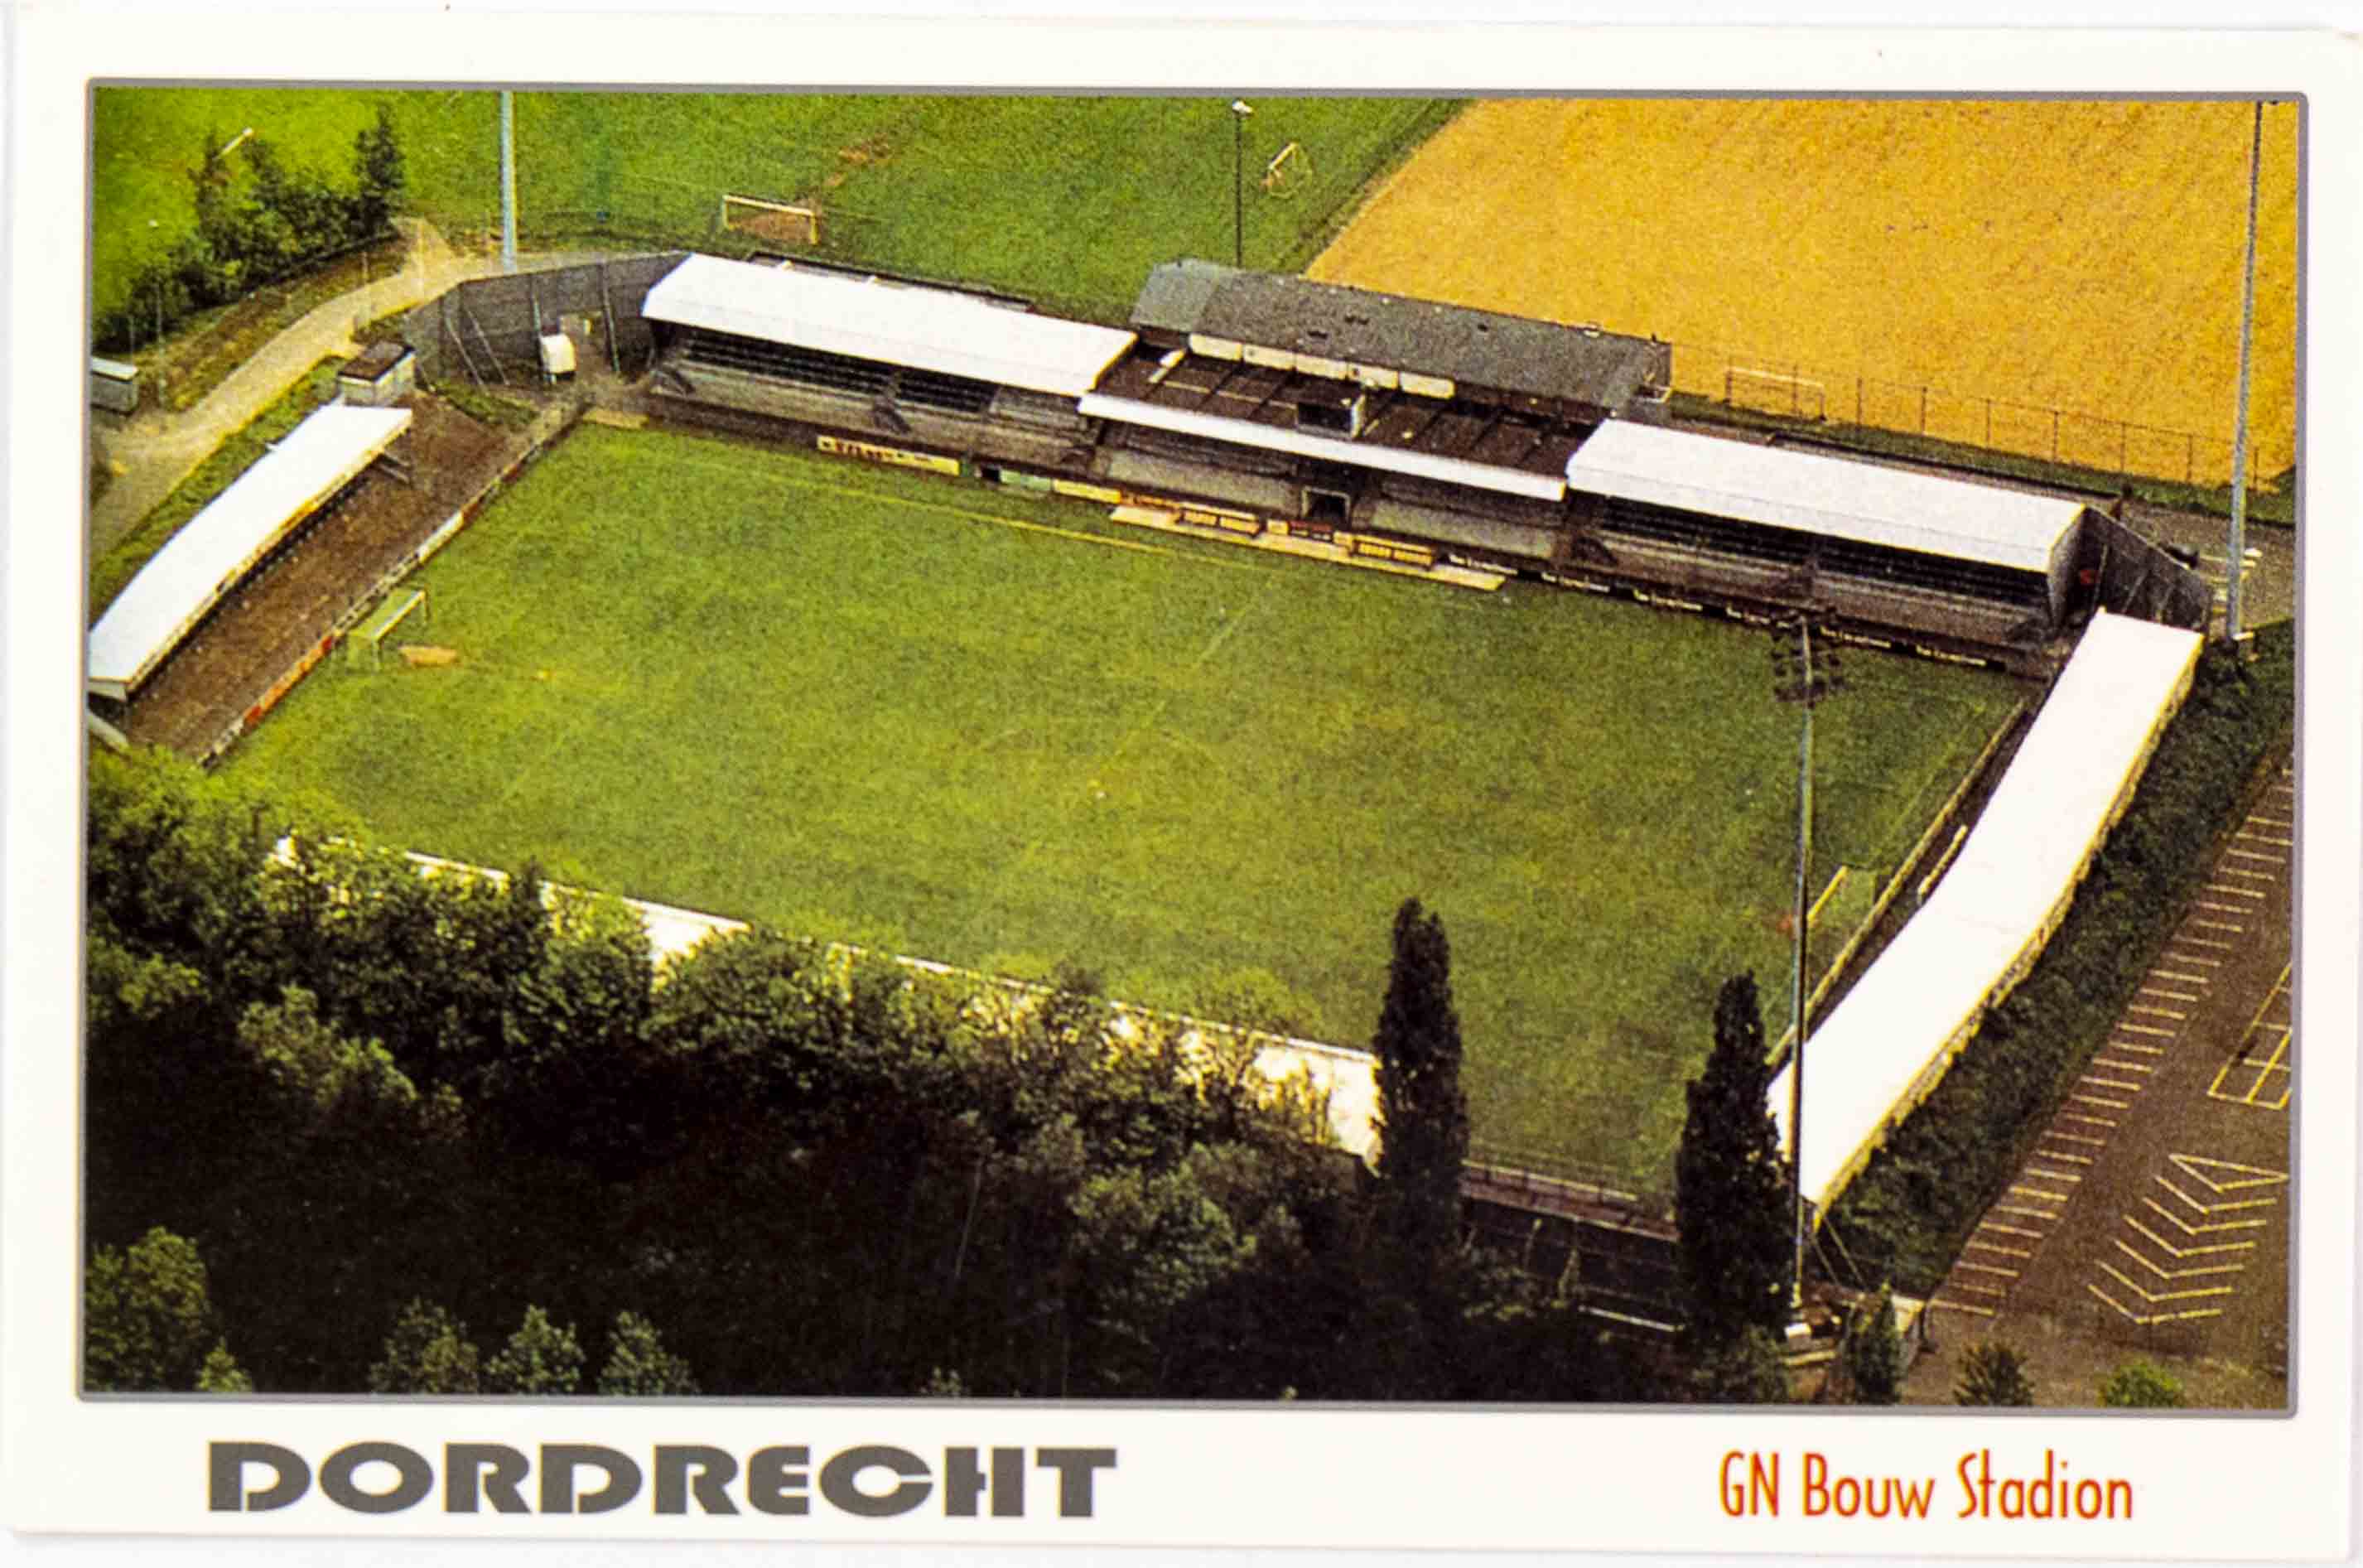 Pohlednice stadion, Dodrdrecht, GN Bouw Stadion